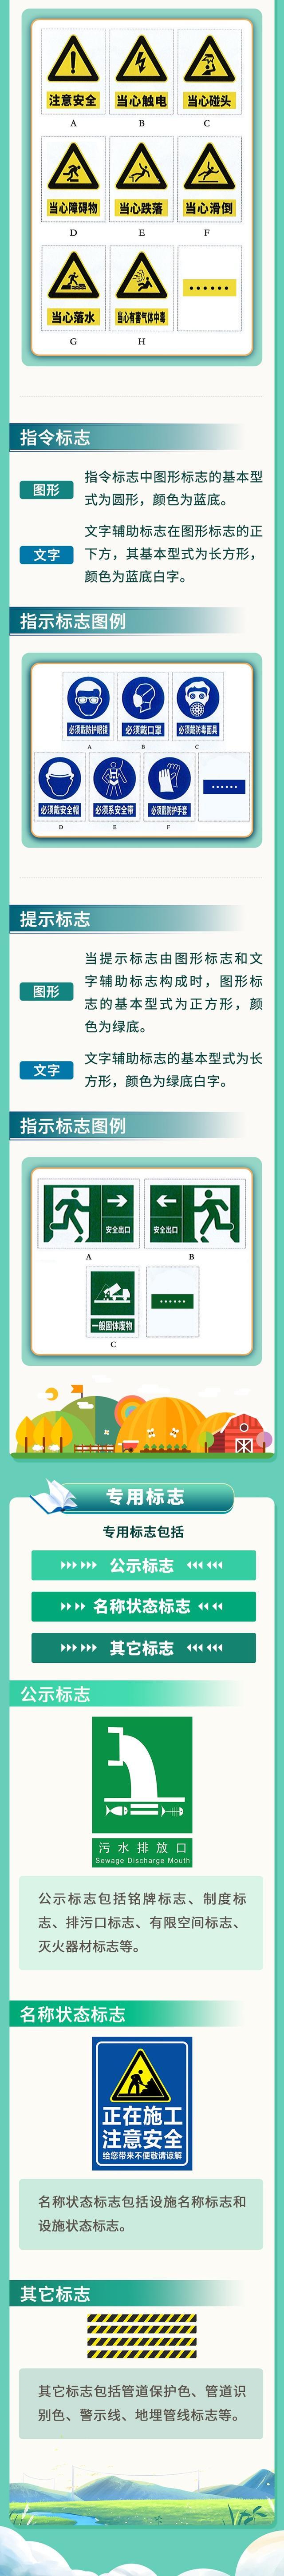 一图读懂丨上海市农村生活污水治理设施标志设置导则